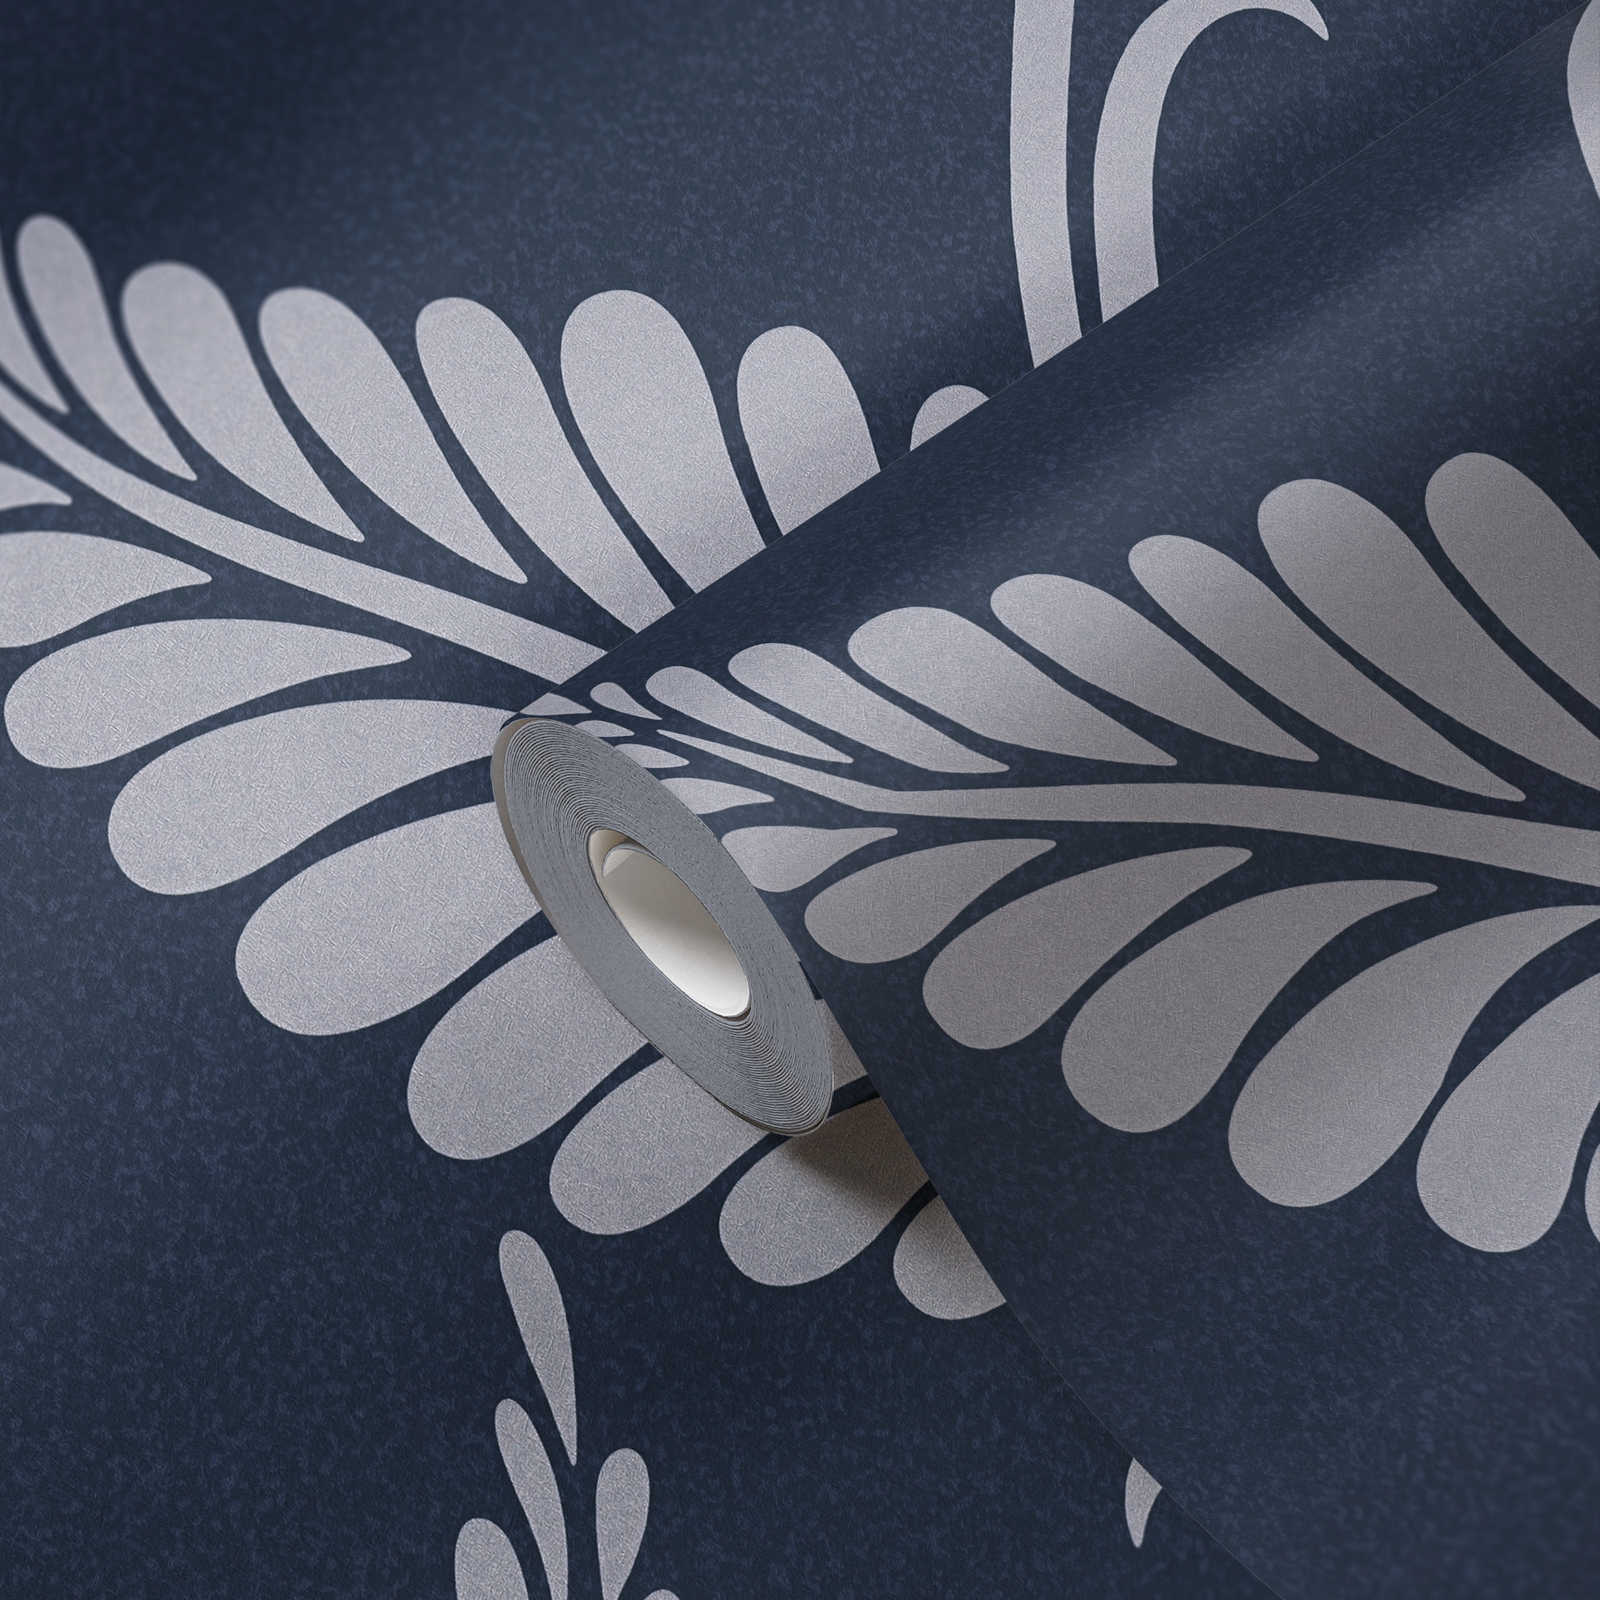             Bloemrijkpapier behang glanzend met bladeren - blauw, zilver
        